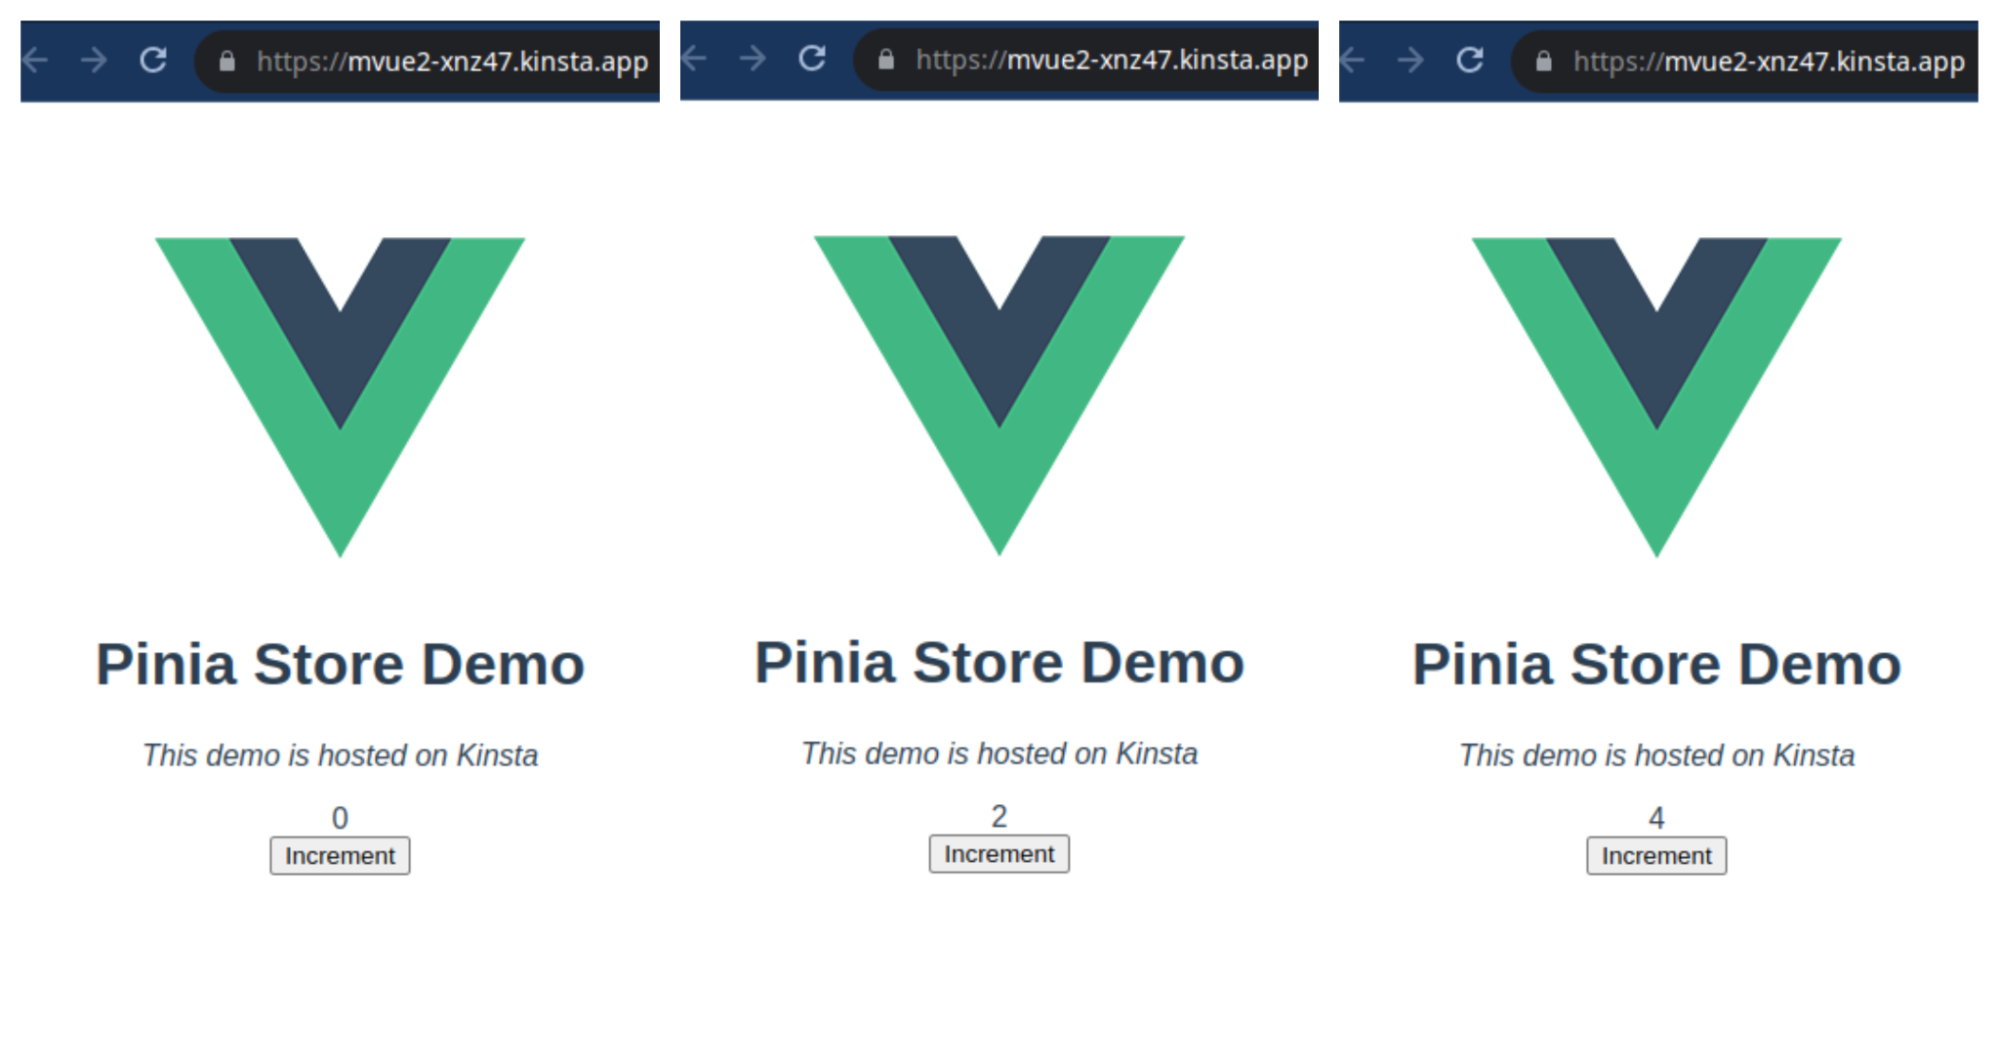 Pinia Store Demoランディングページのスクリーンショット：（0、2、4 と数値を変更している）